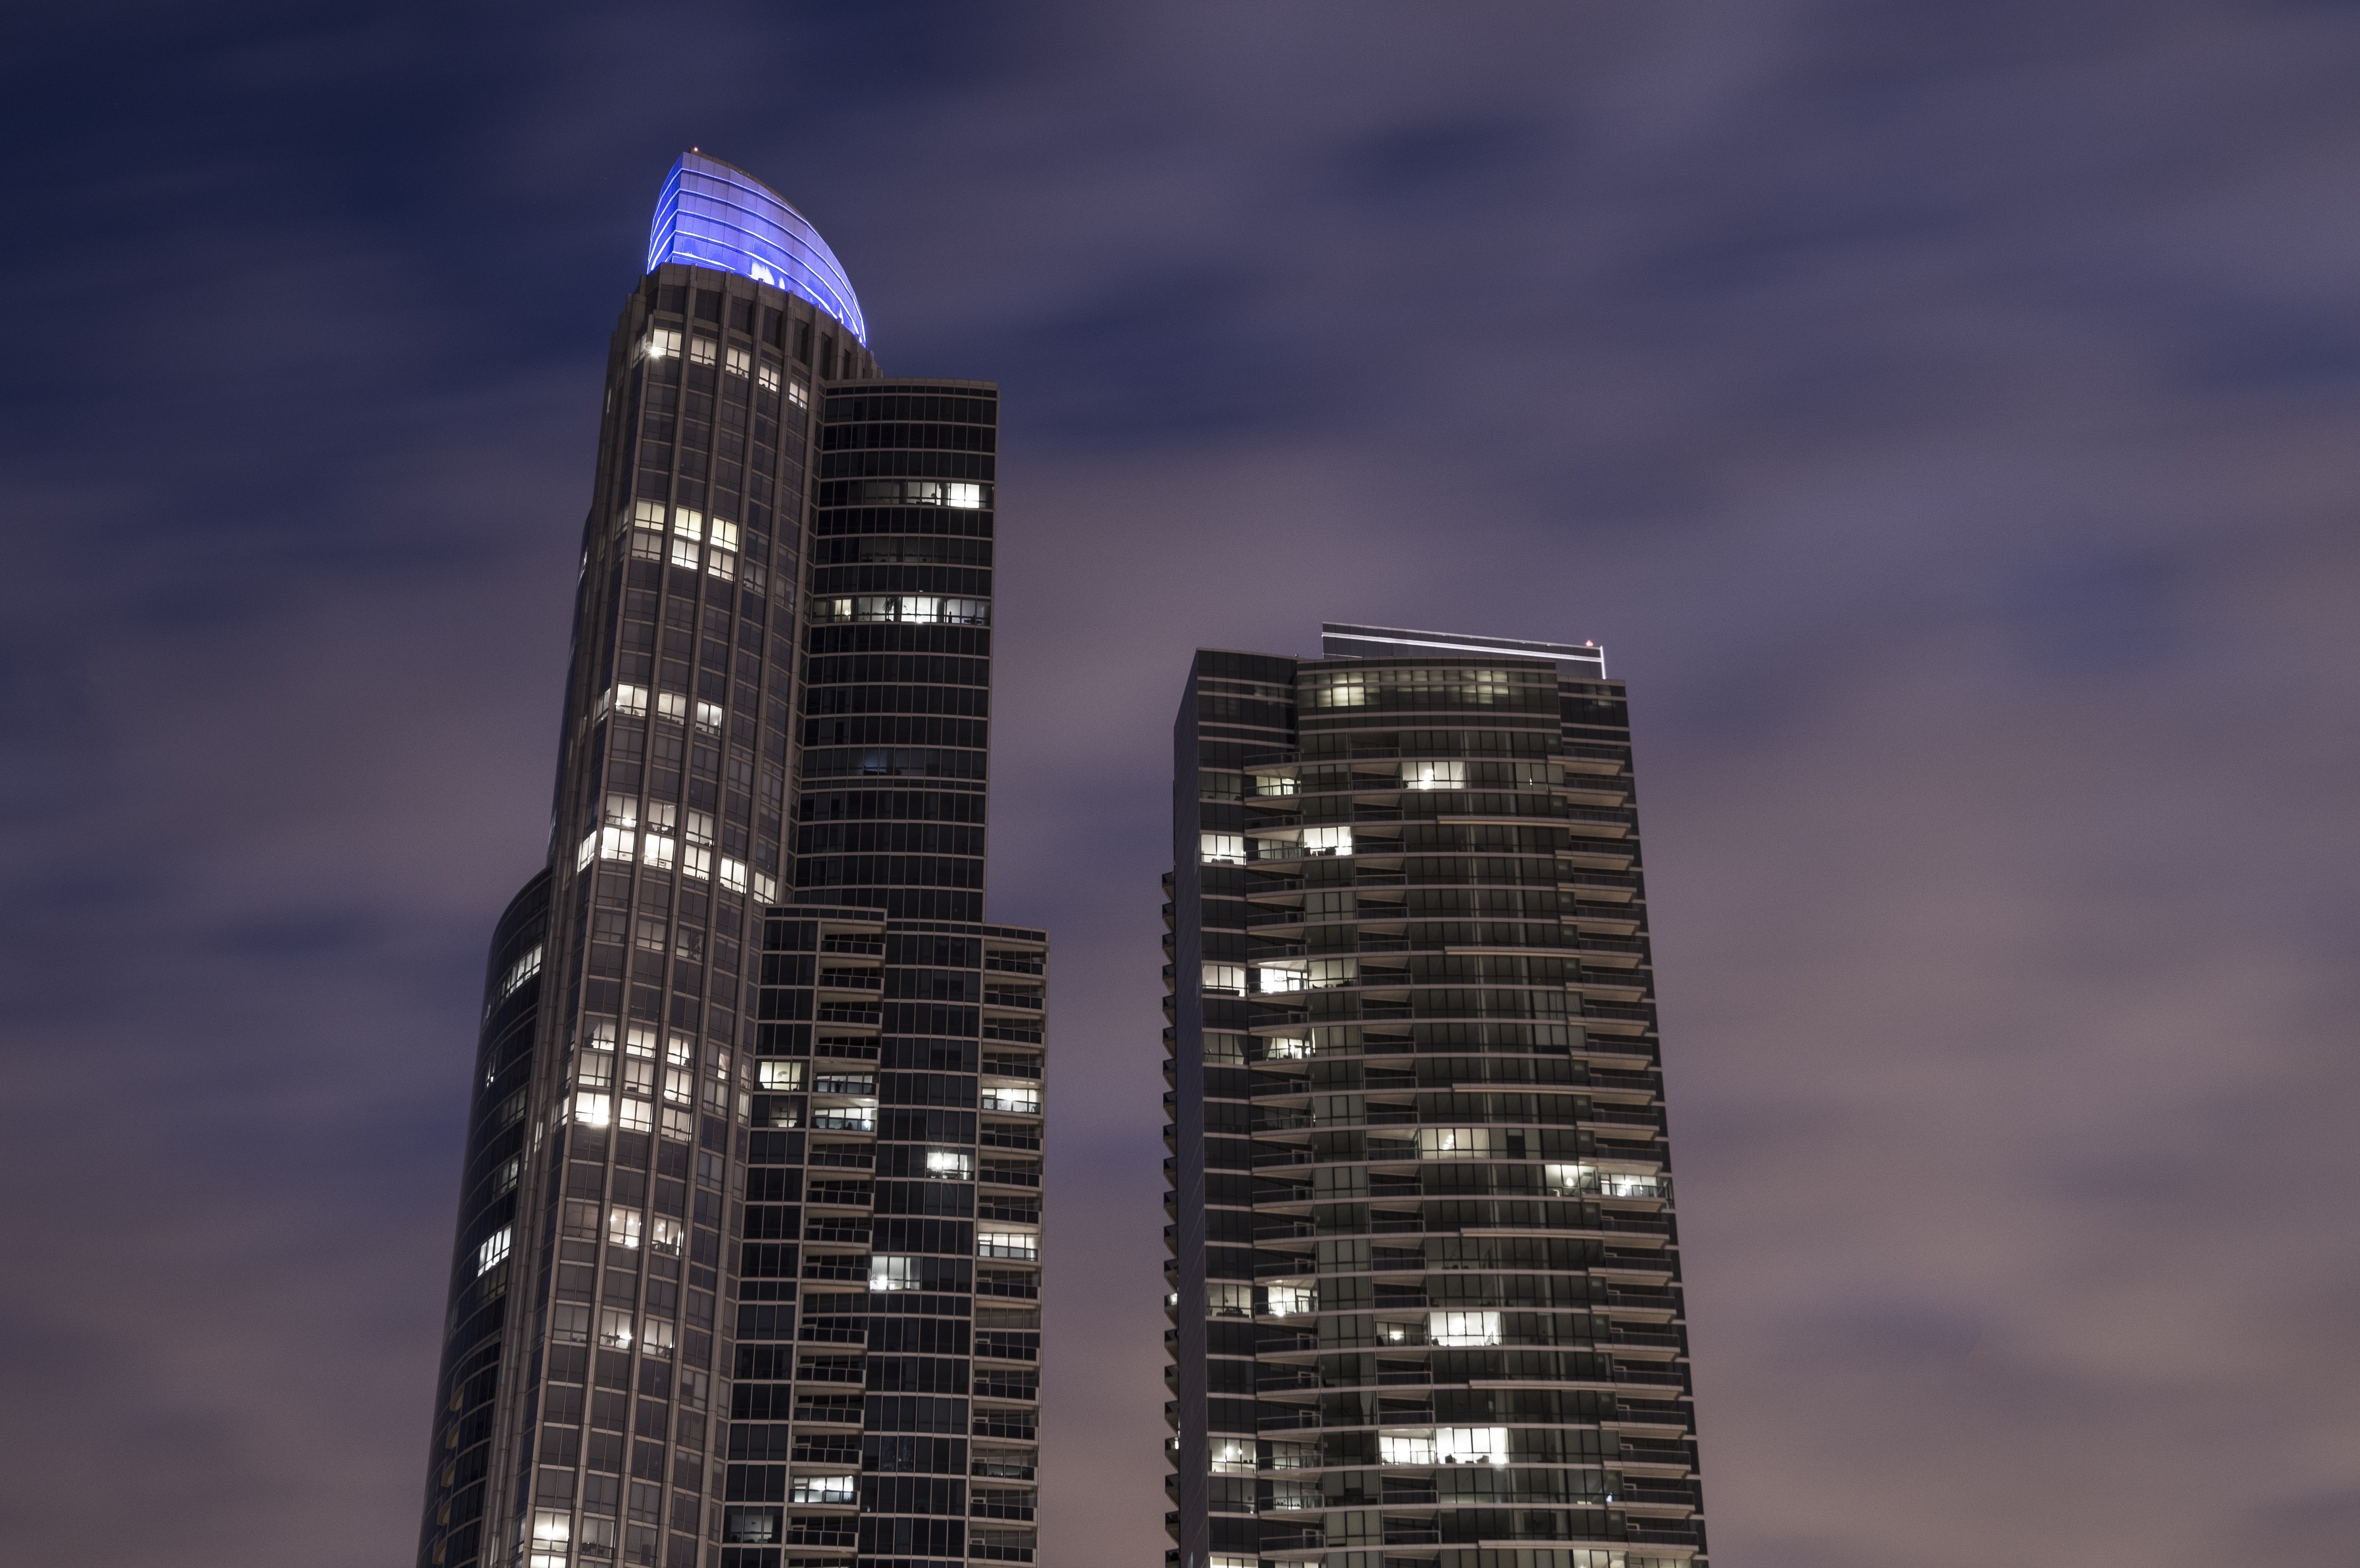 2 concrete high rise building